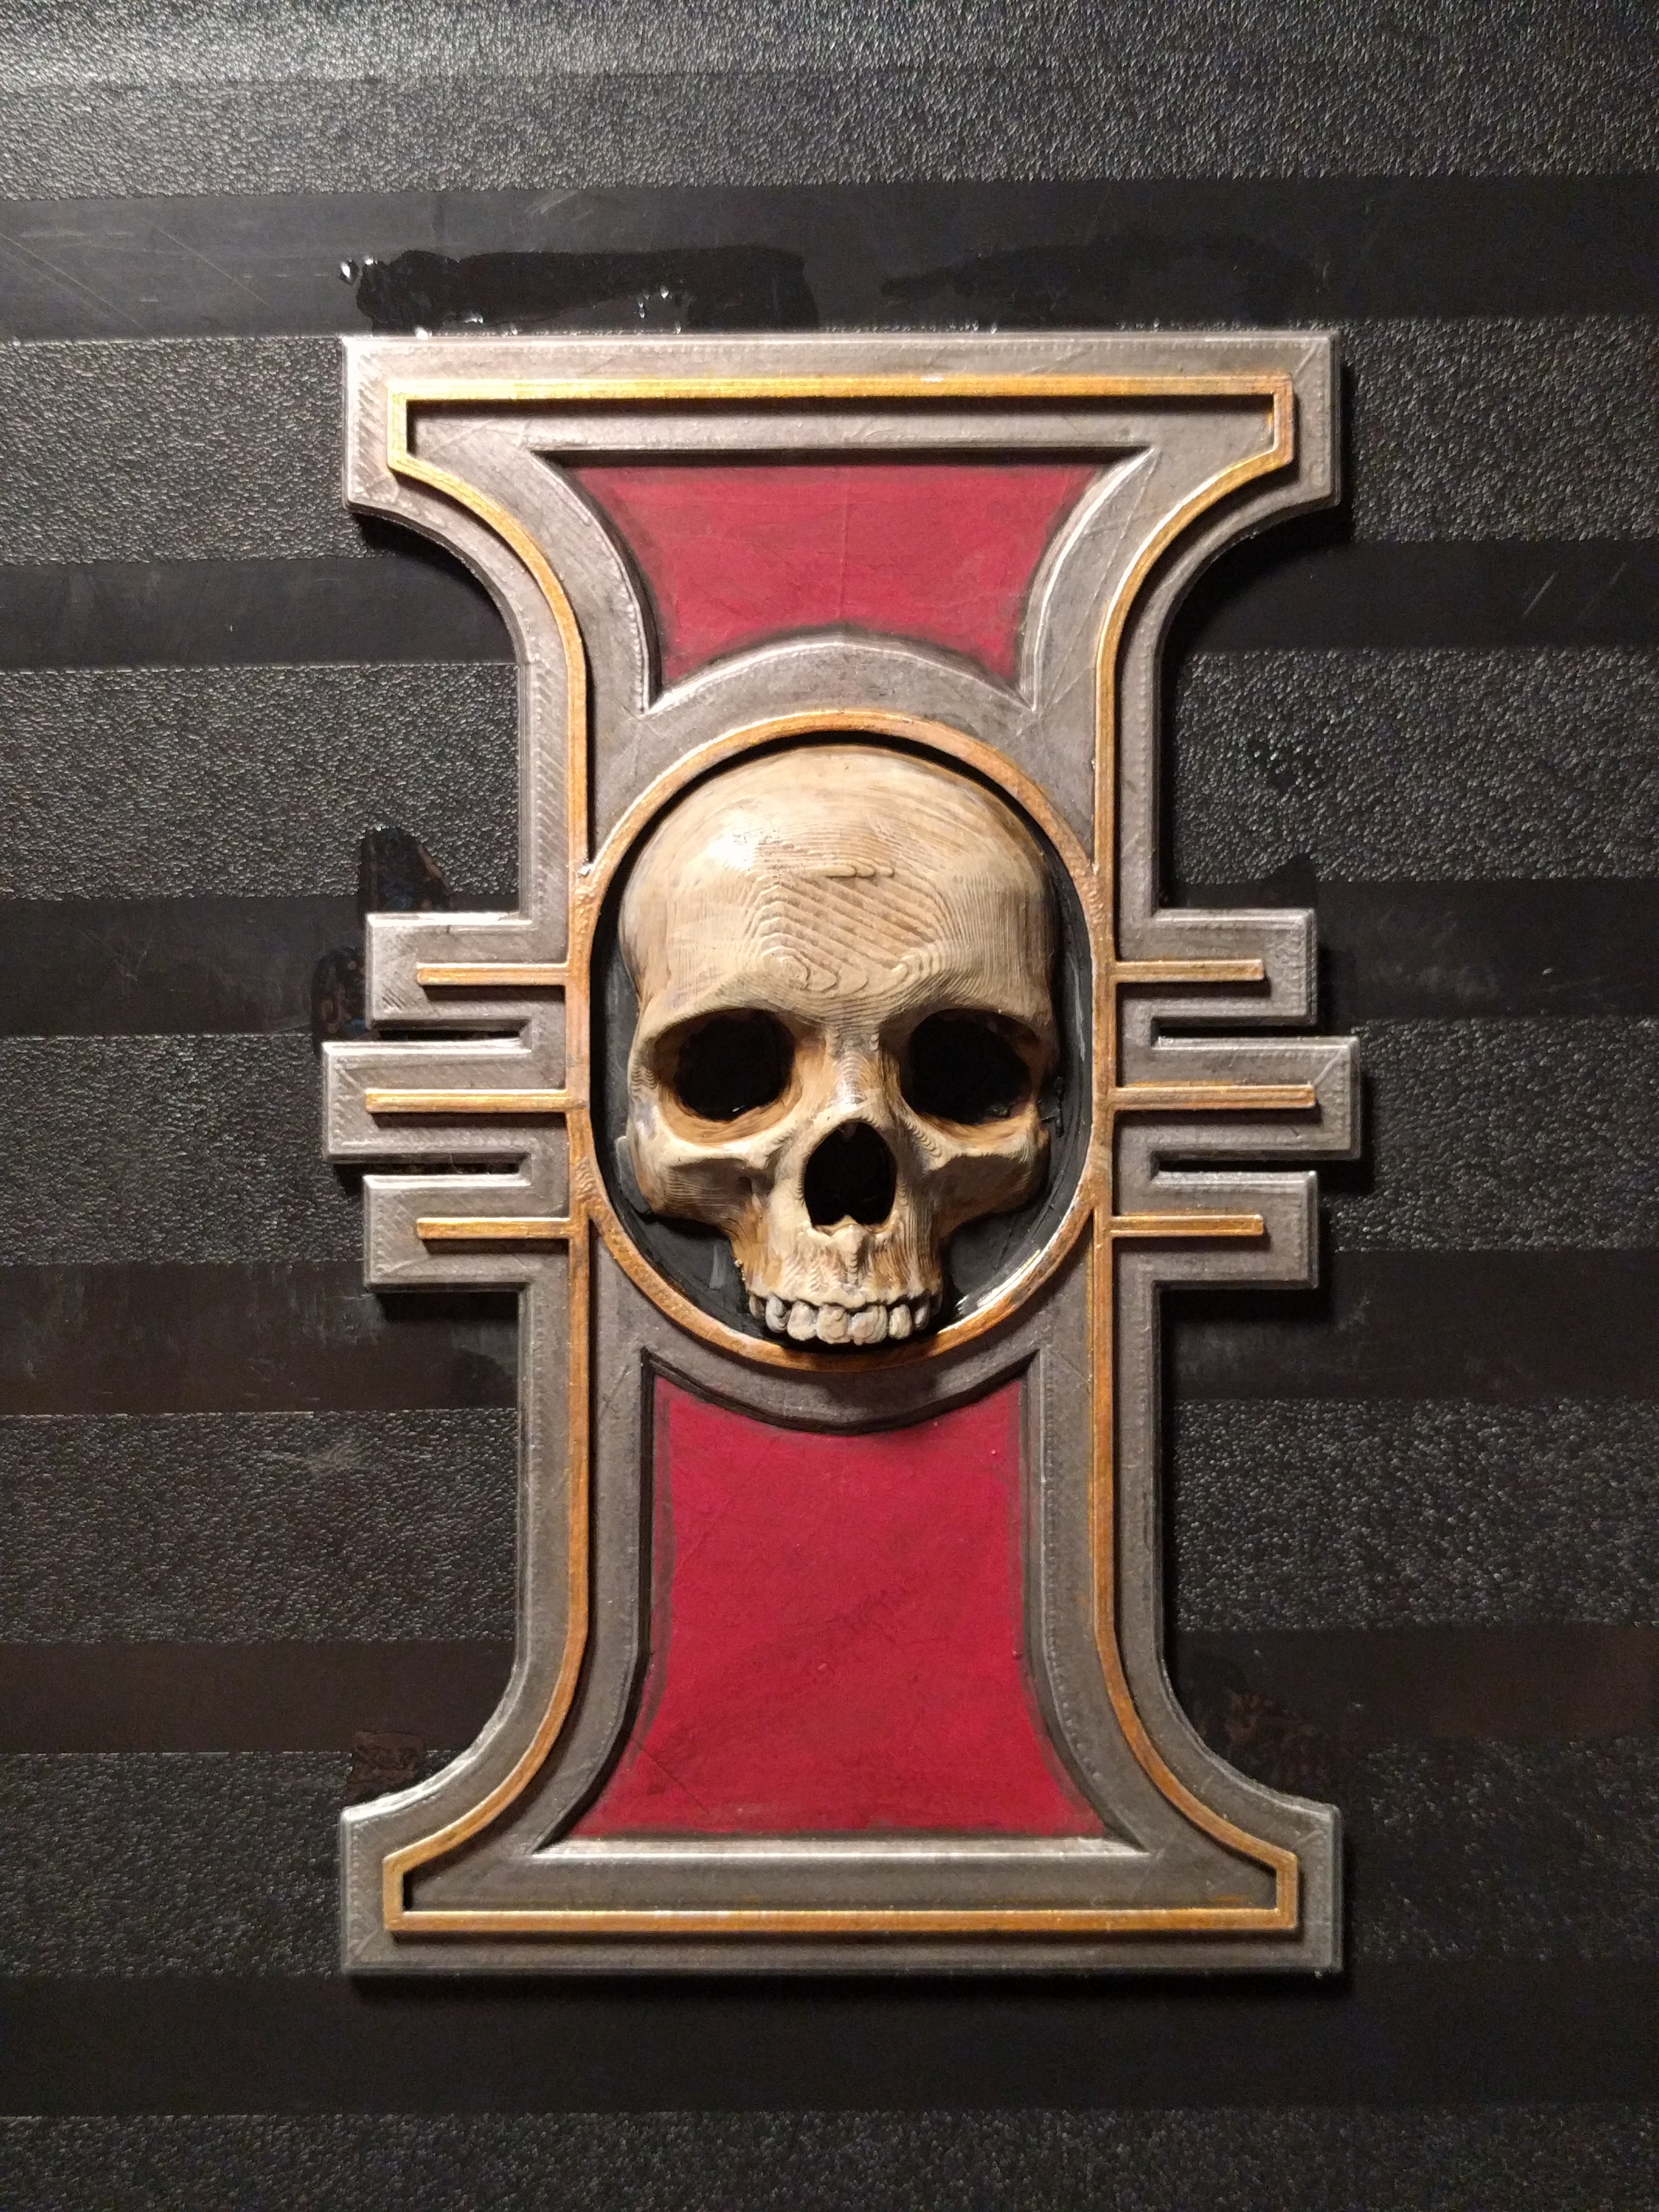 40k Inquisition symbol